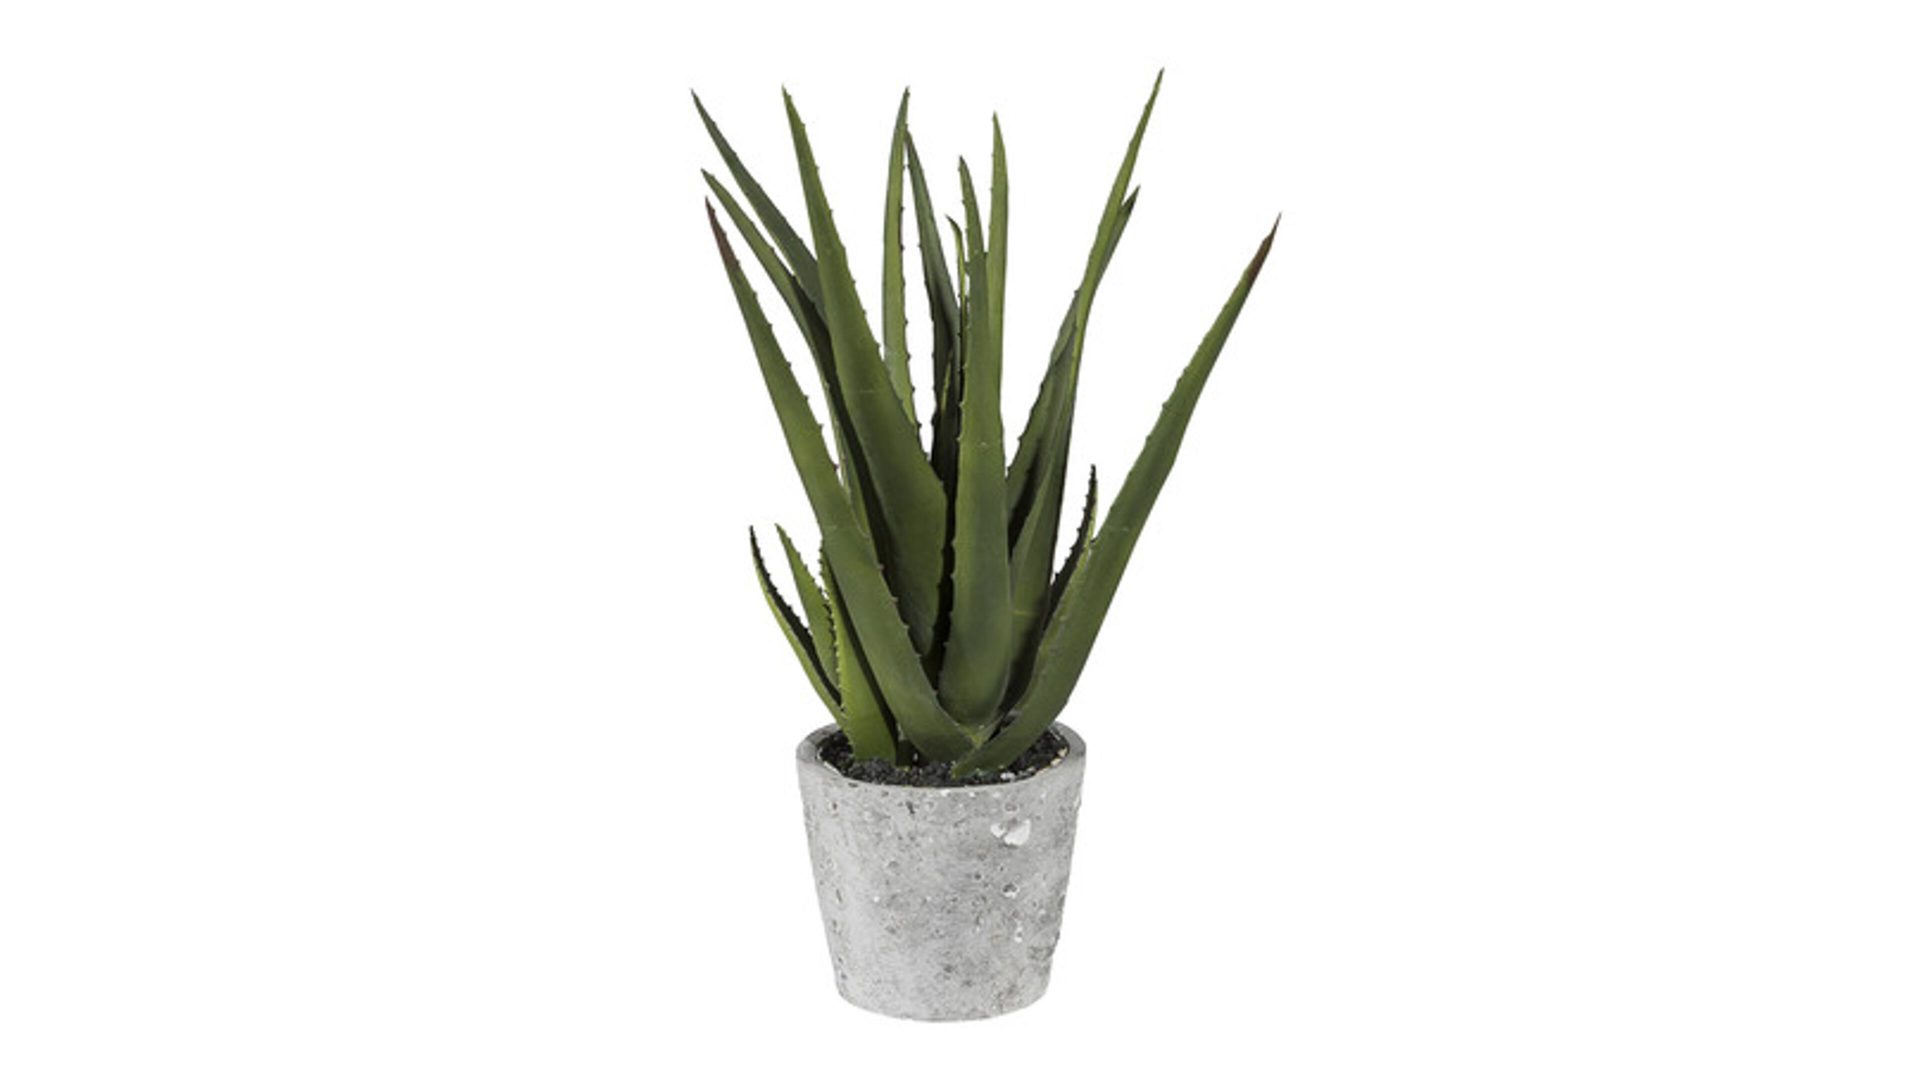 Pflanzen-Set Gasper aus Kunststoff in Grün Aloe Vera Pflanze künstliche Grünpflanze & Zementtopf